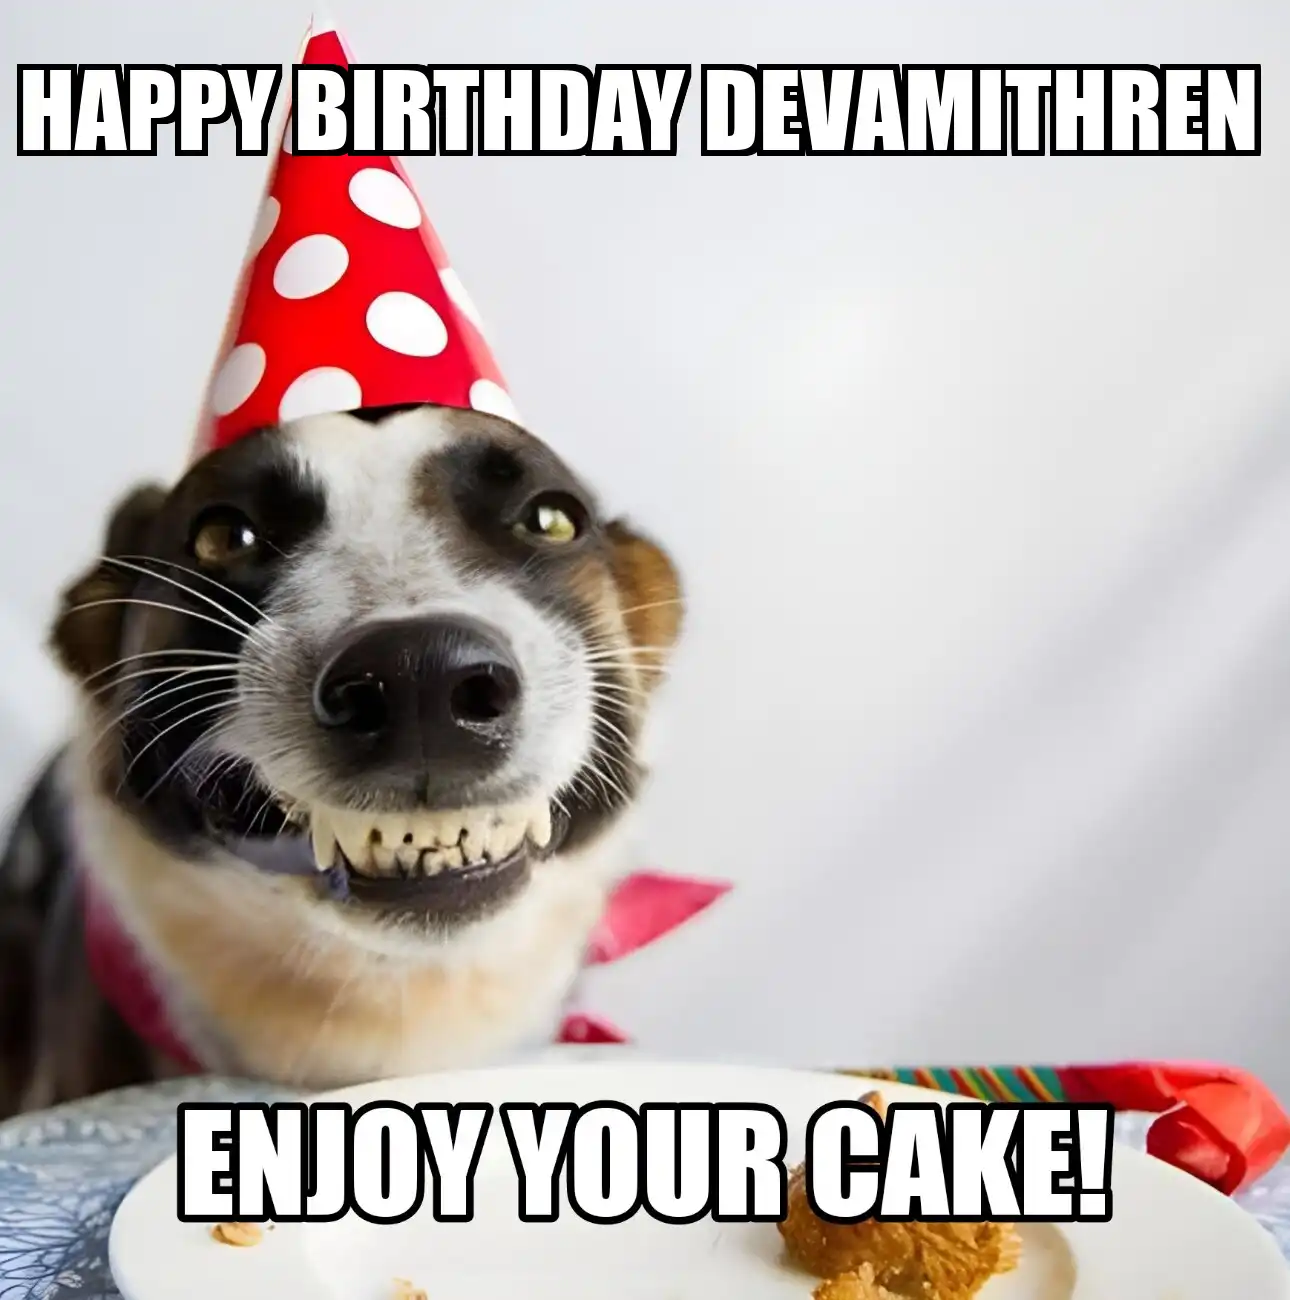 Happy Birthday Devamithren Enjoy Your Cake Dog Meme